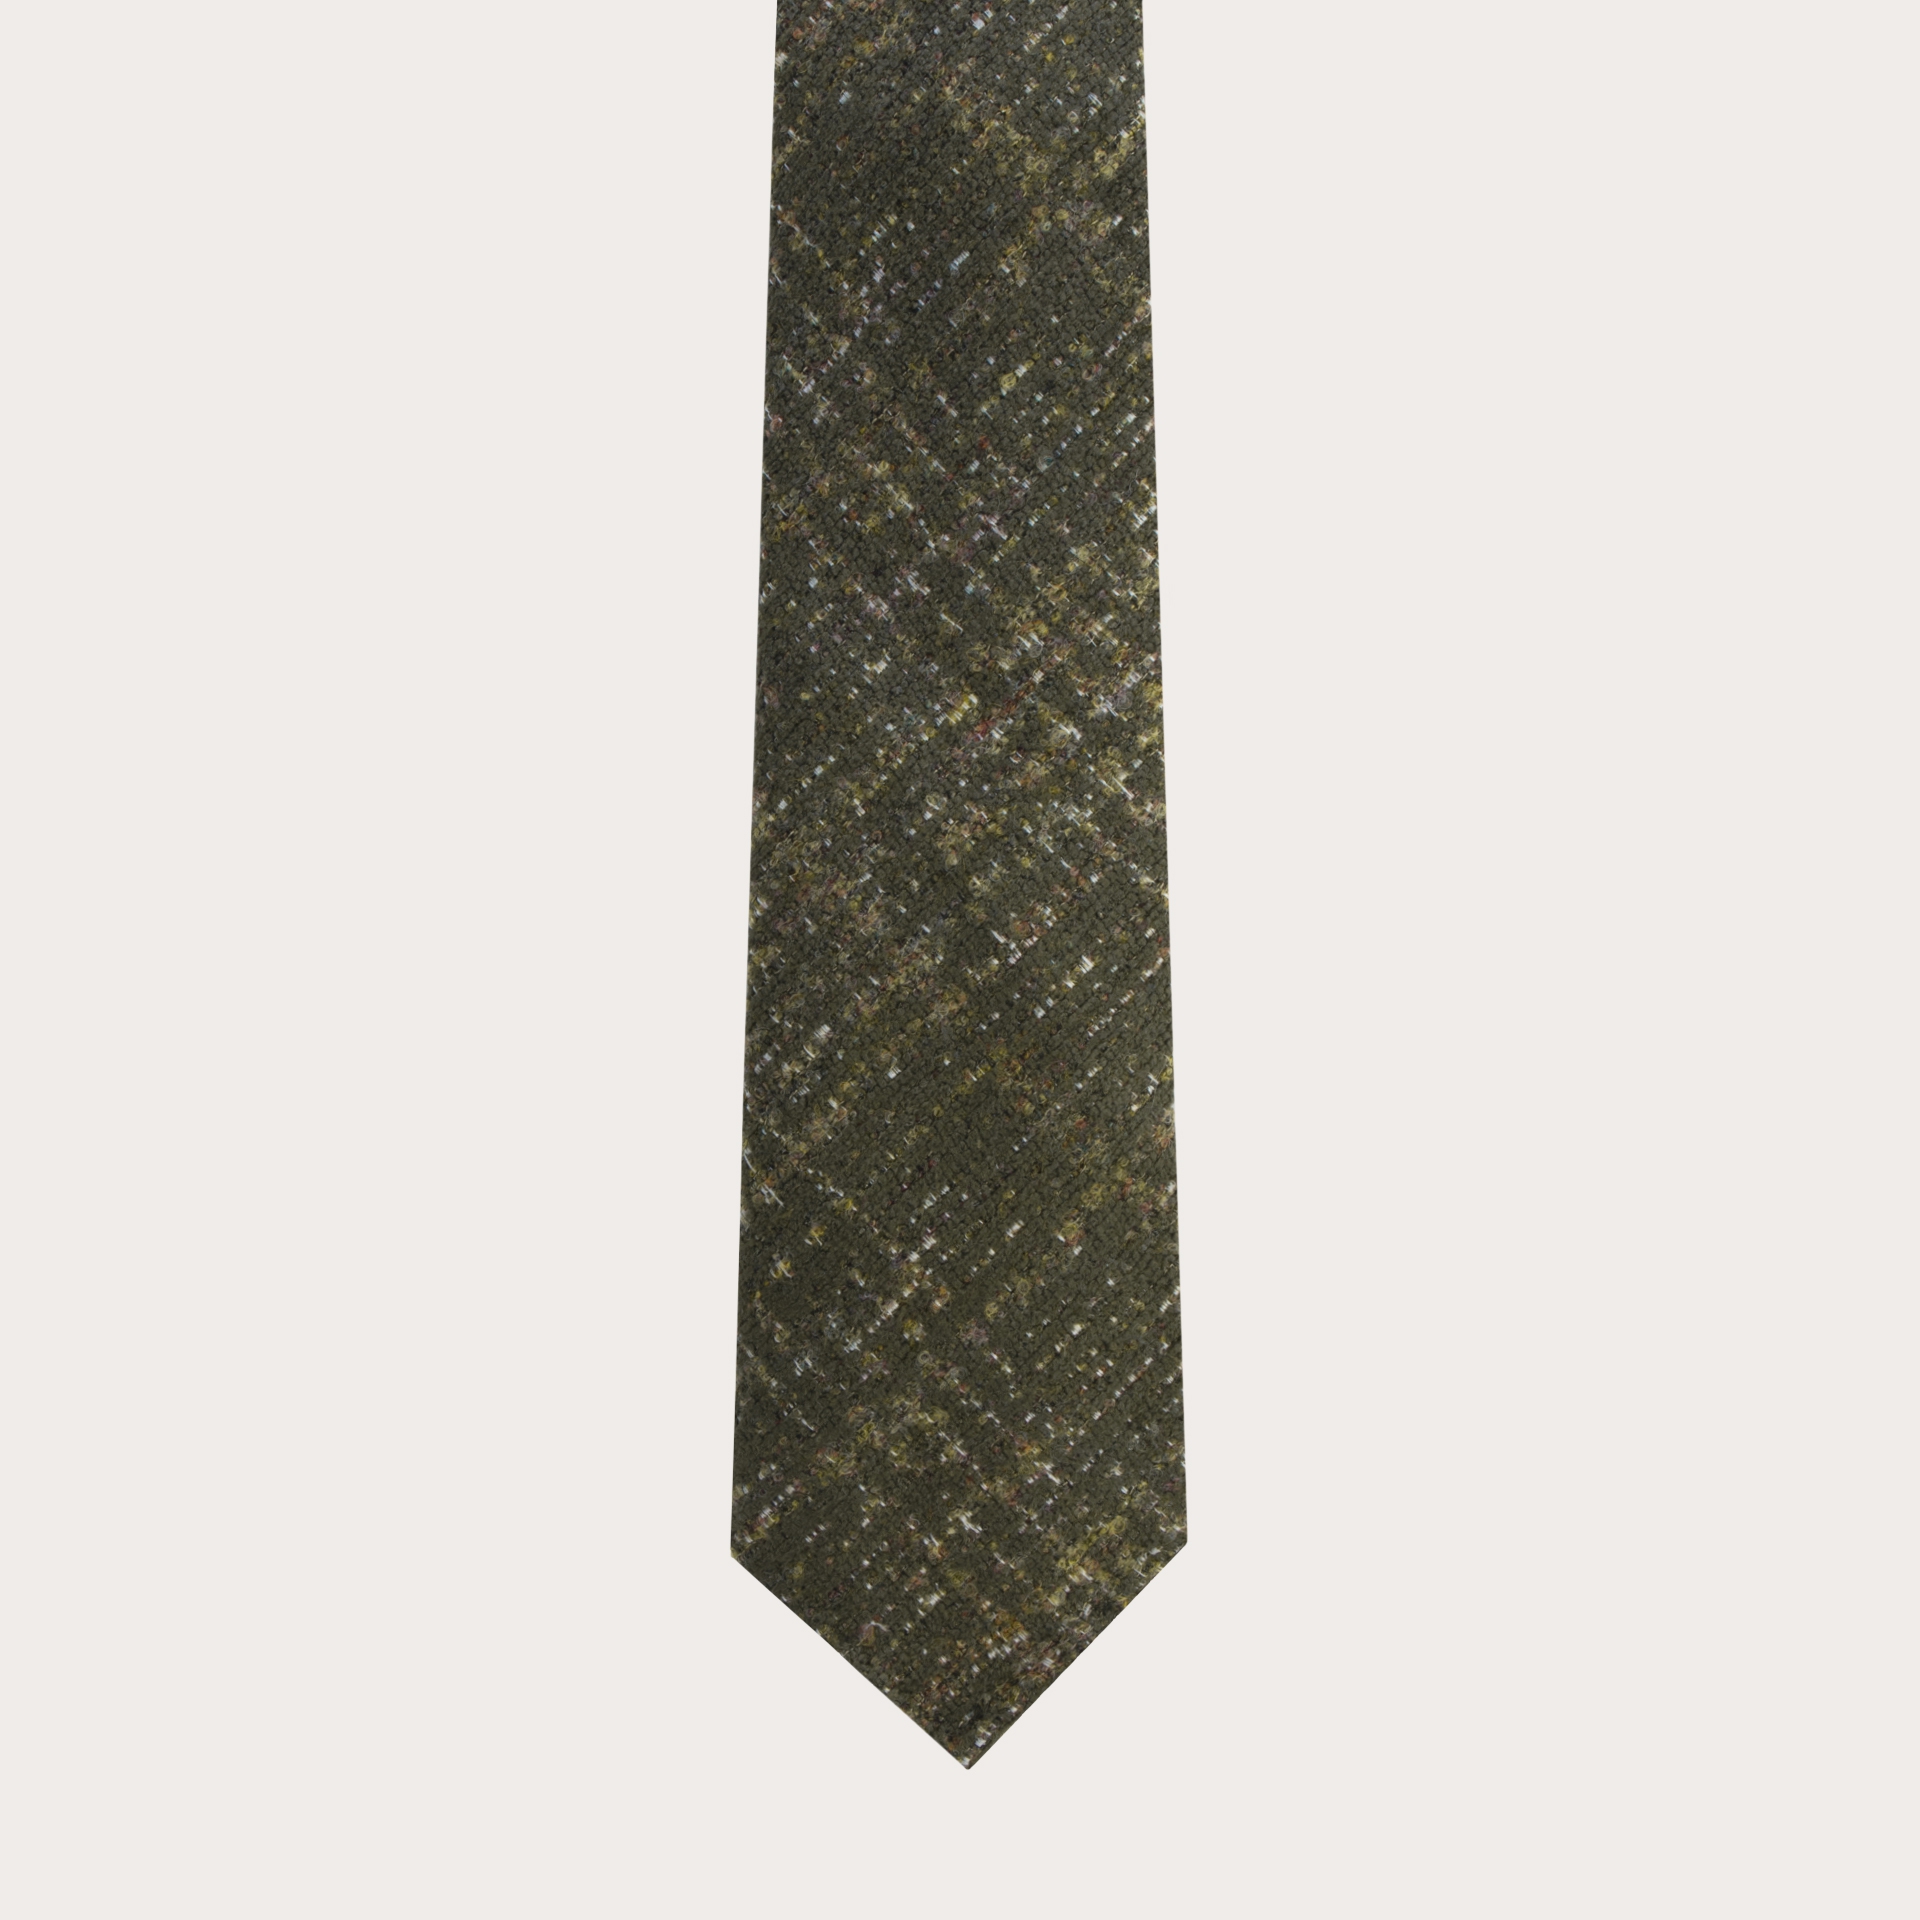 Cravate sans doublure vert en soie laine check tartans